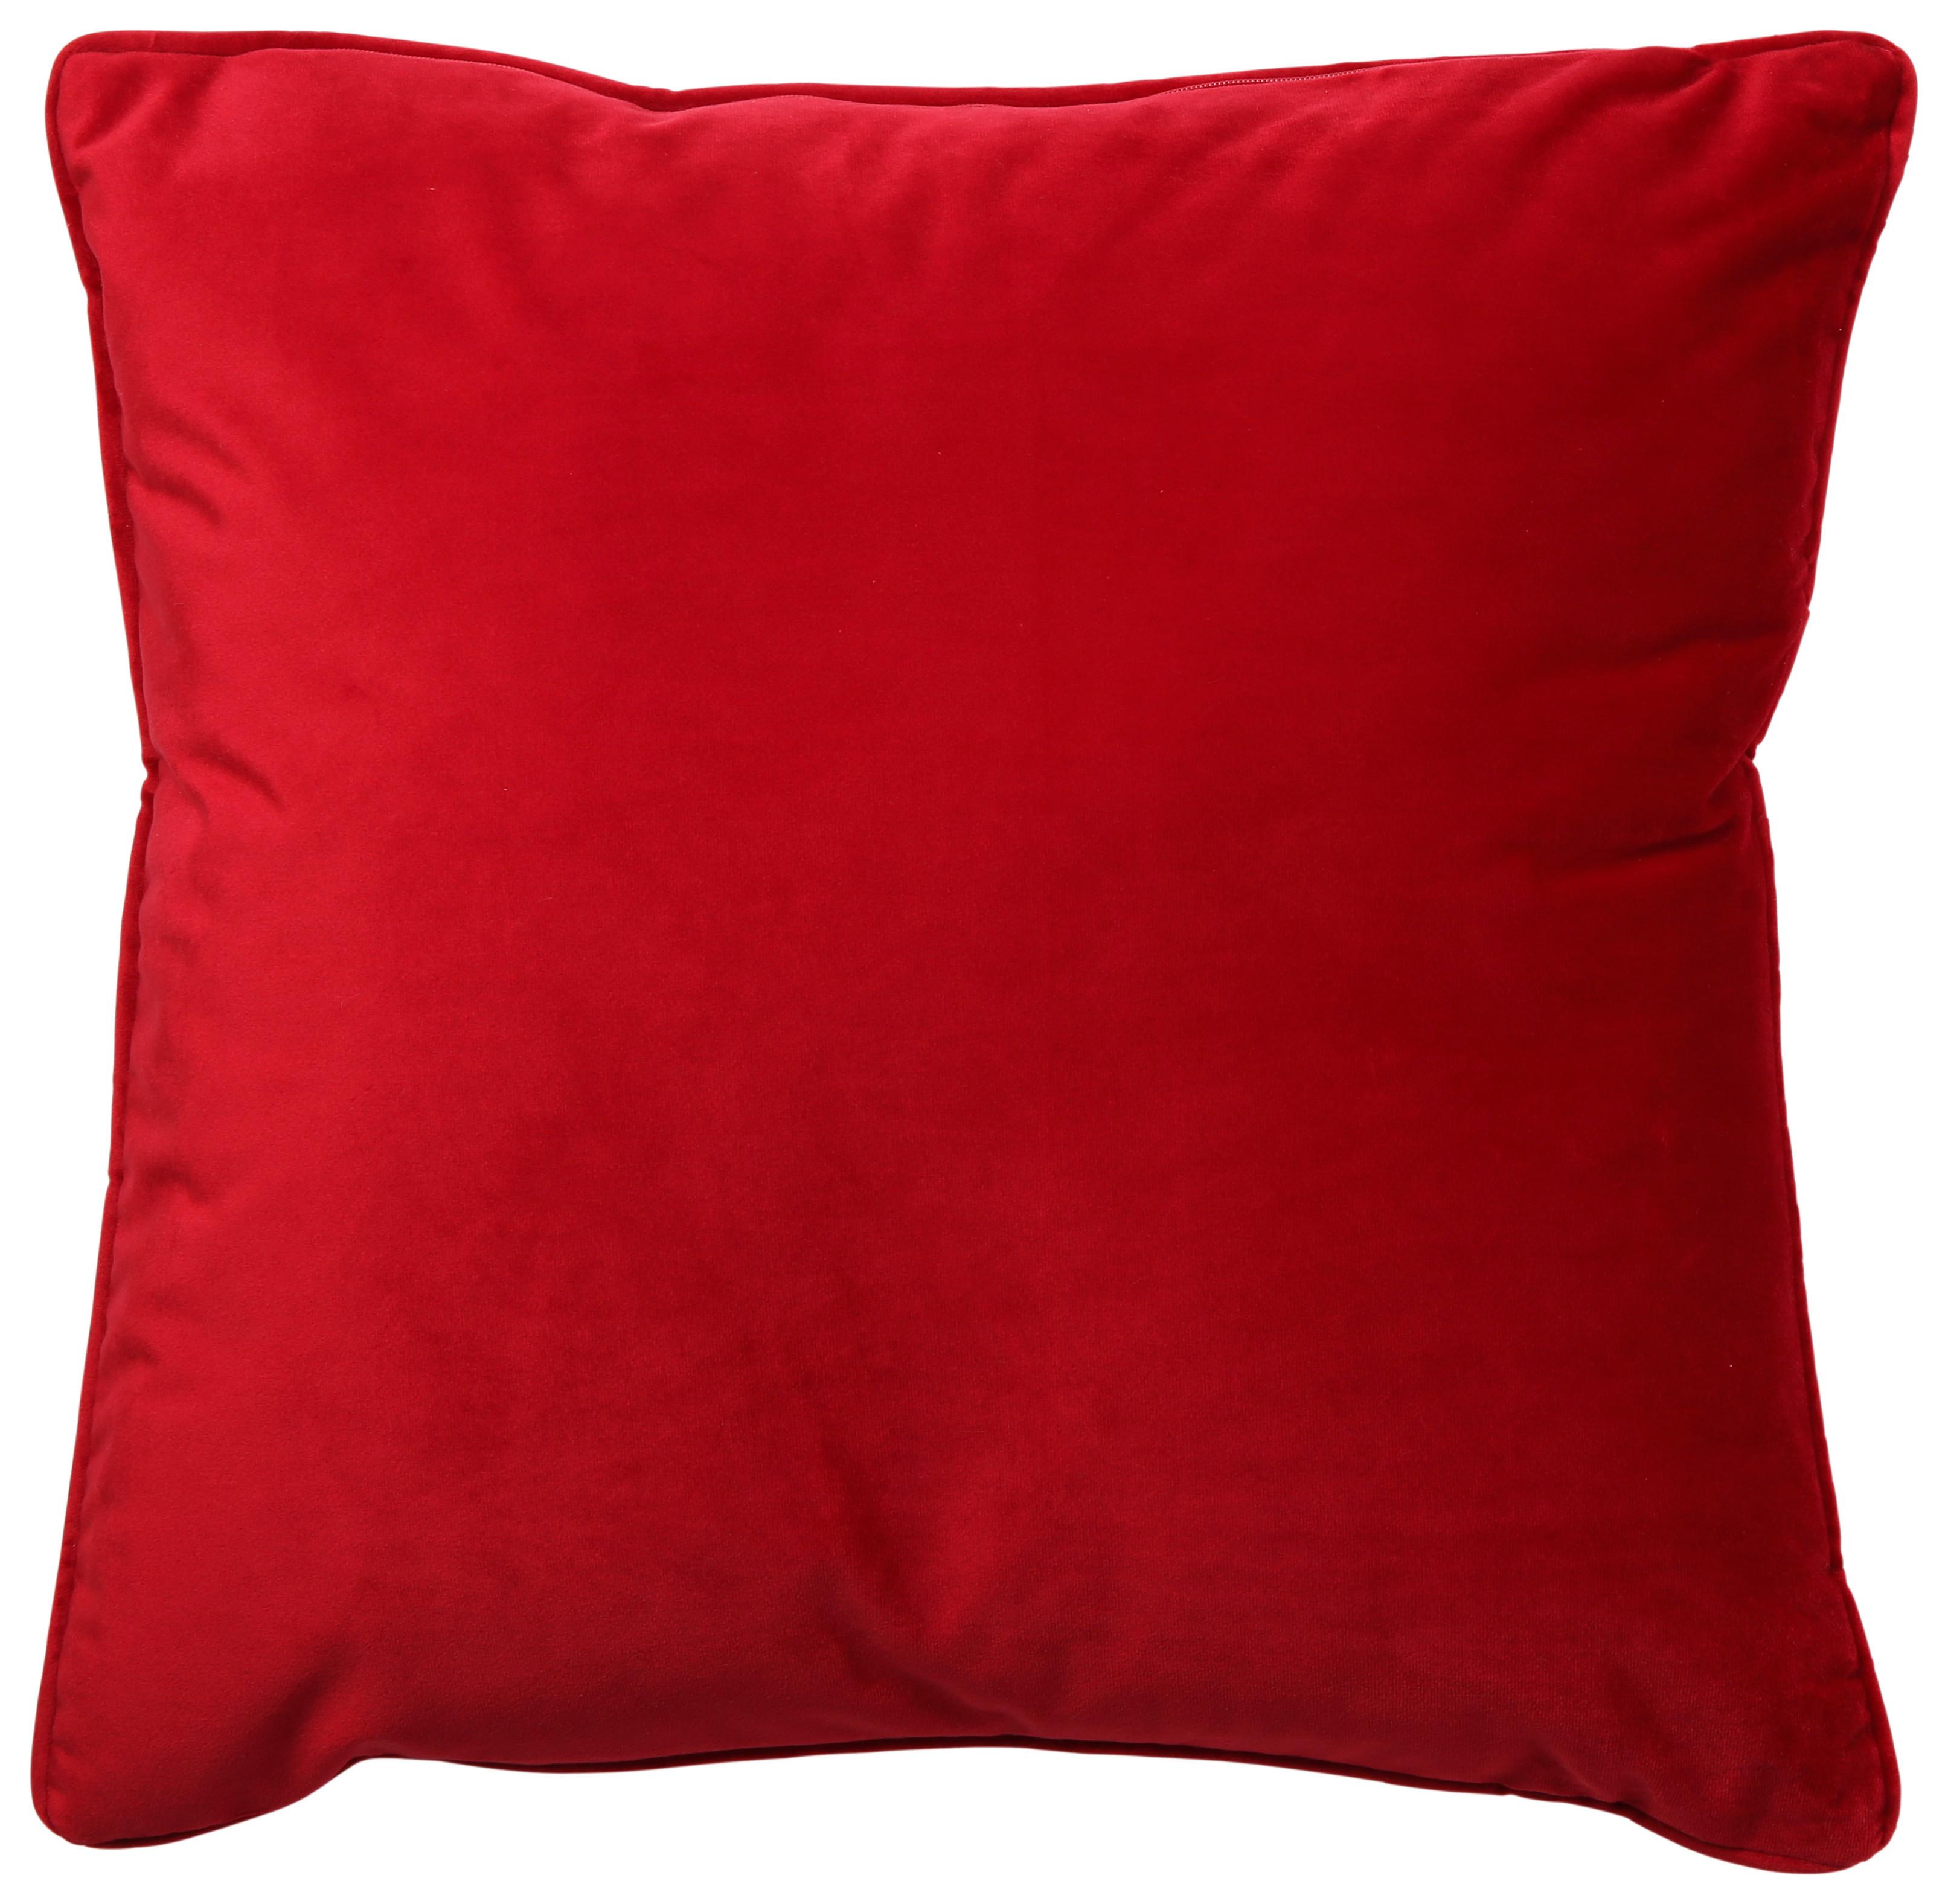 Zierkissen Viola in Rot ca. 45x45cm - Rot, Konventionell, Textil (45/45cm) - Premium Living